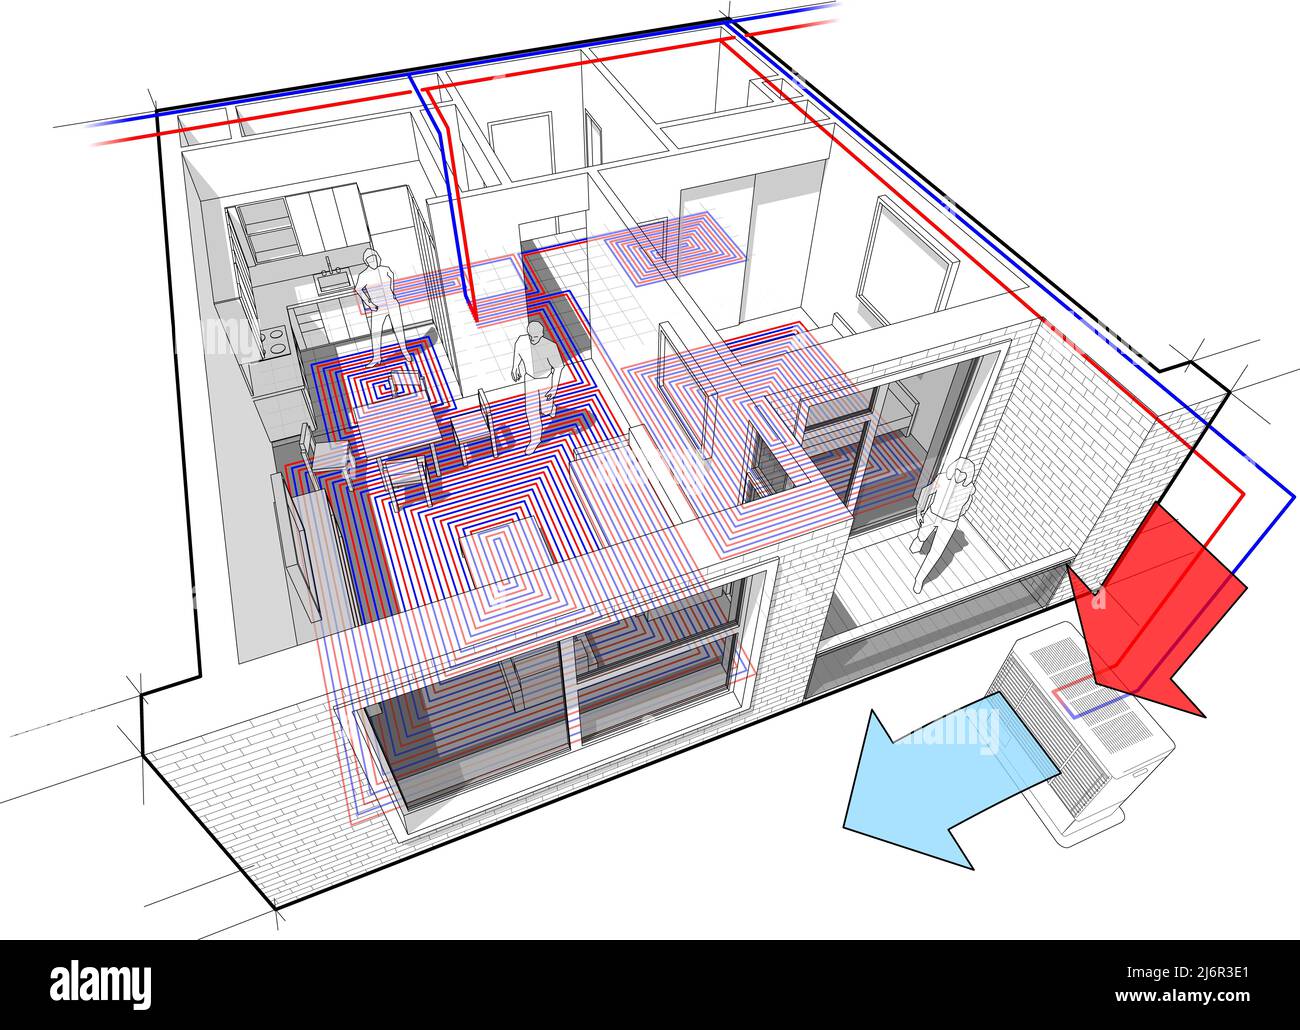 Wohnung komplett eingerichtet mit Warmwasser-Fußbodenheizung und Luftquelle Wärmepumpe mit Zentralheizung als Quelle für Heizenergie Stockfoto